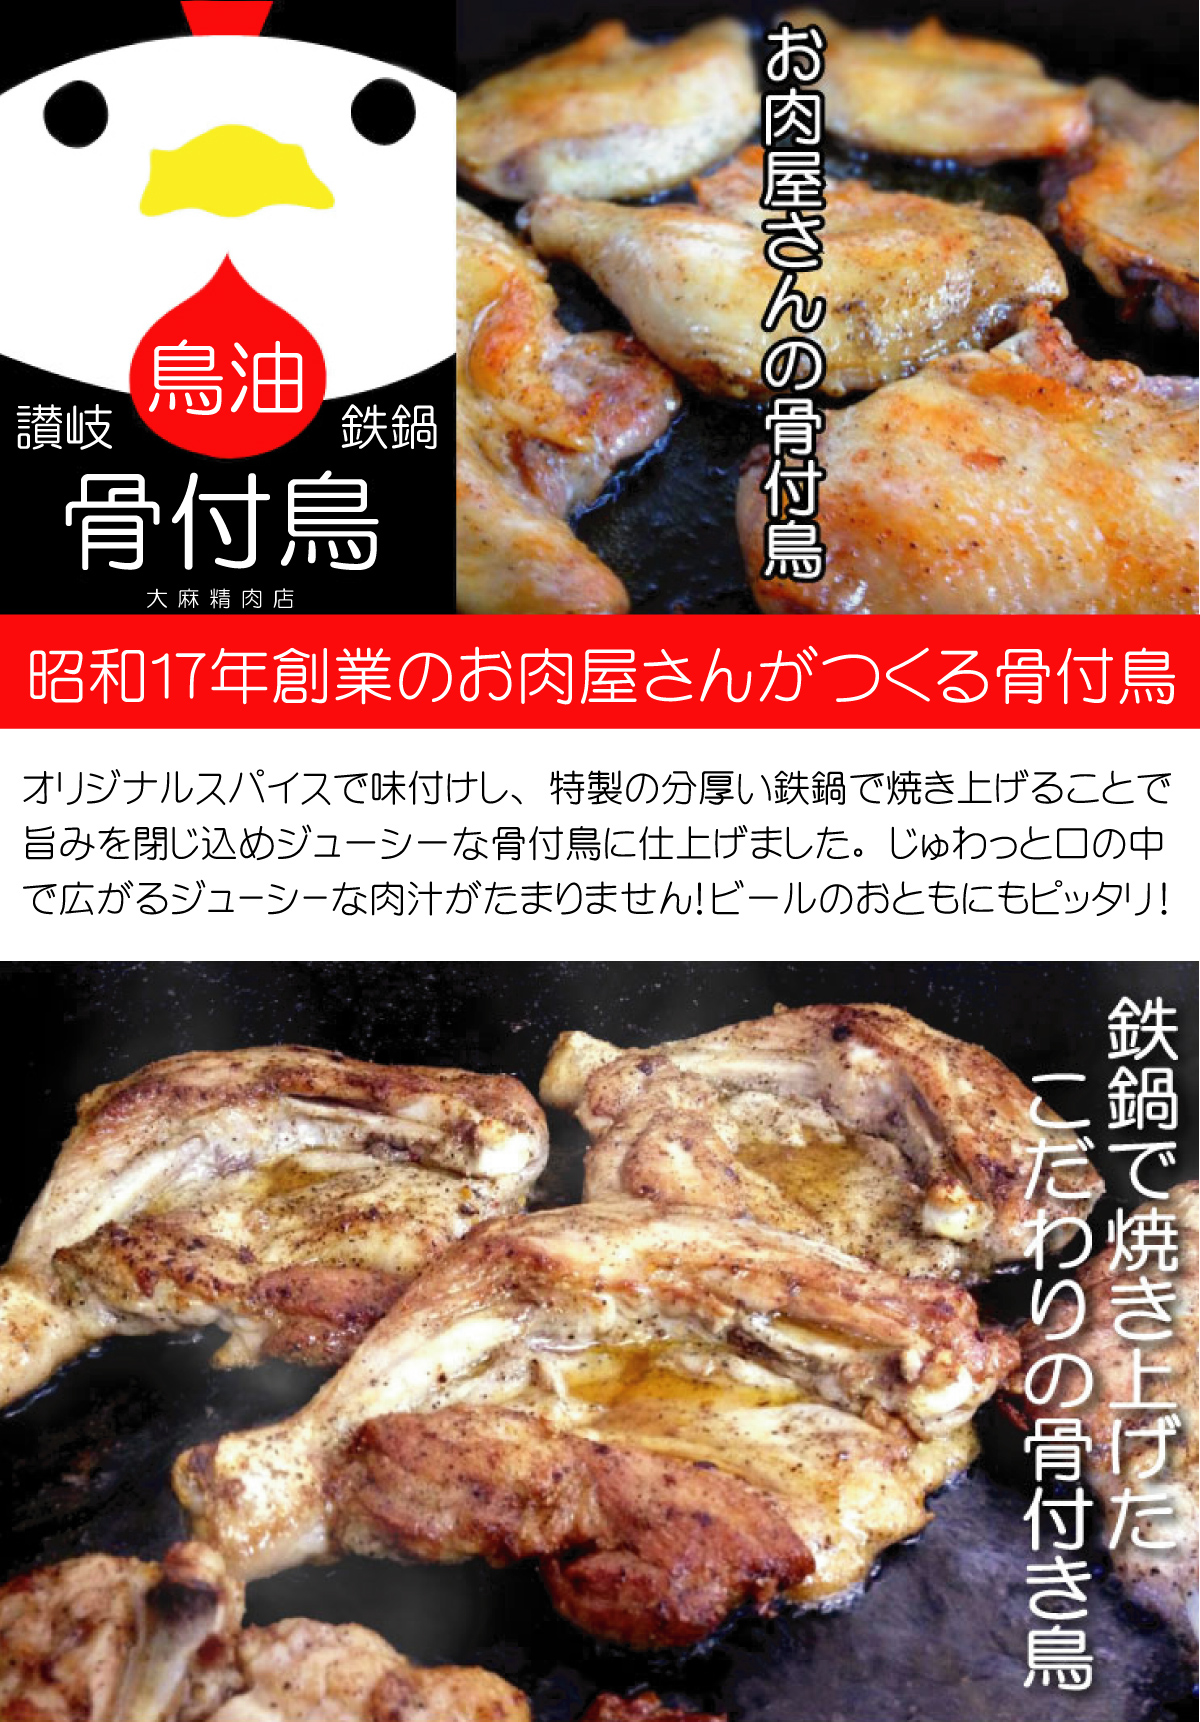 昭和17年創業のお肉屋さんが作る、無添加でおいしい骨付鳥!